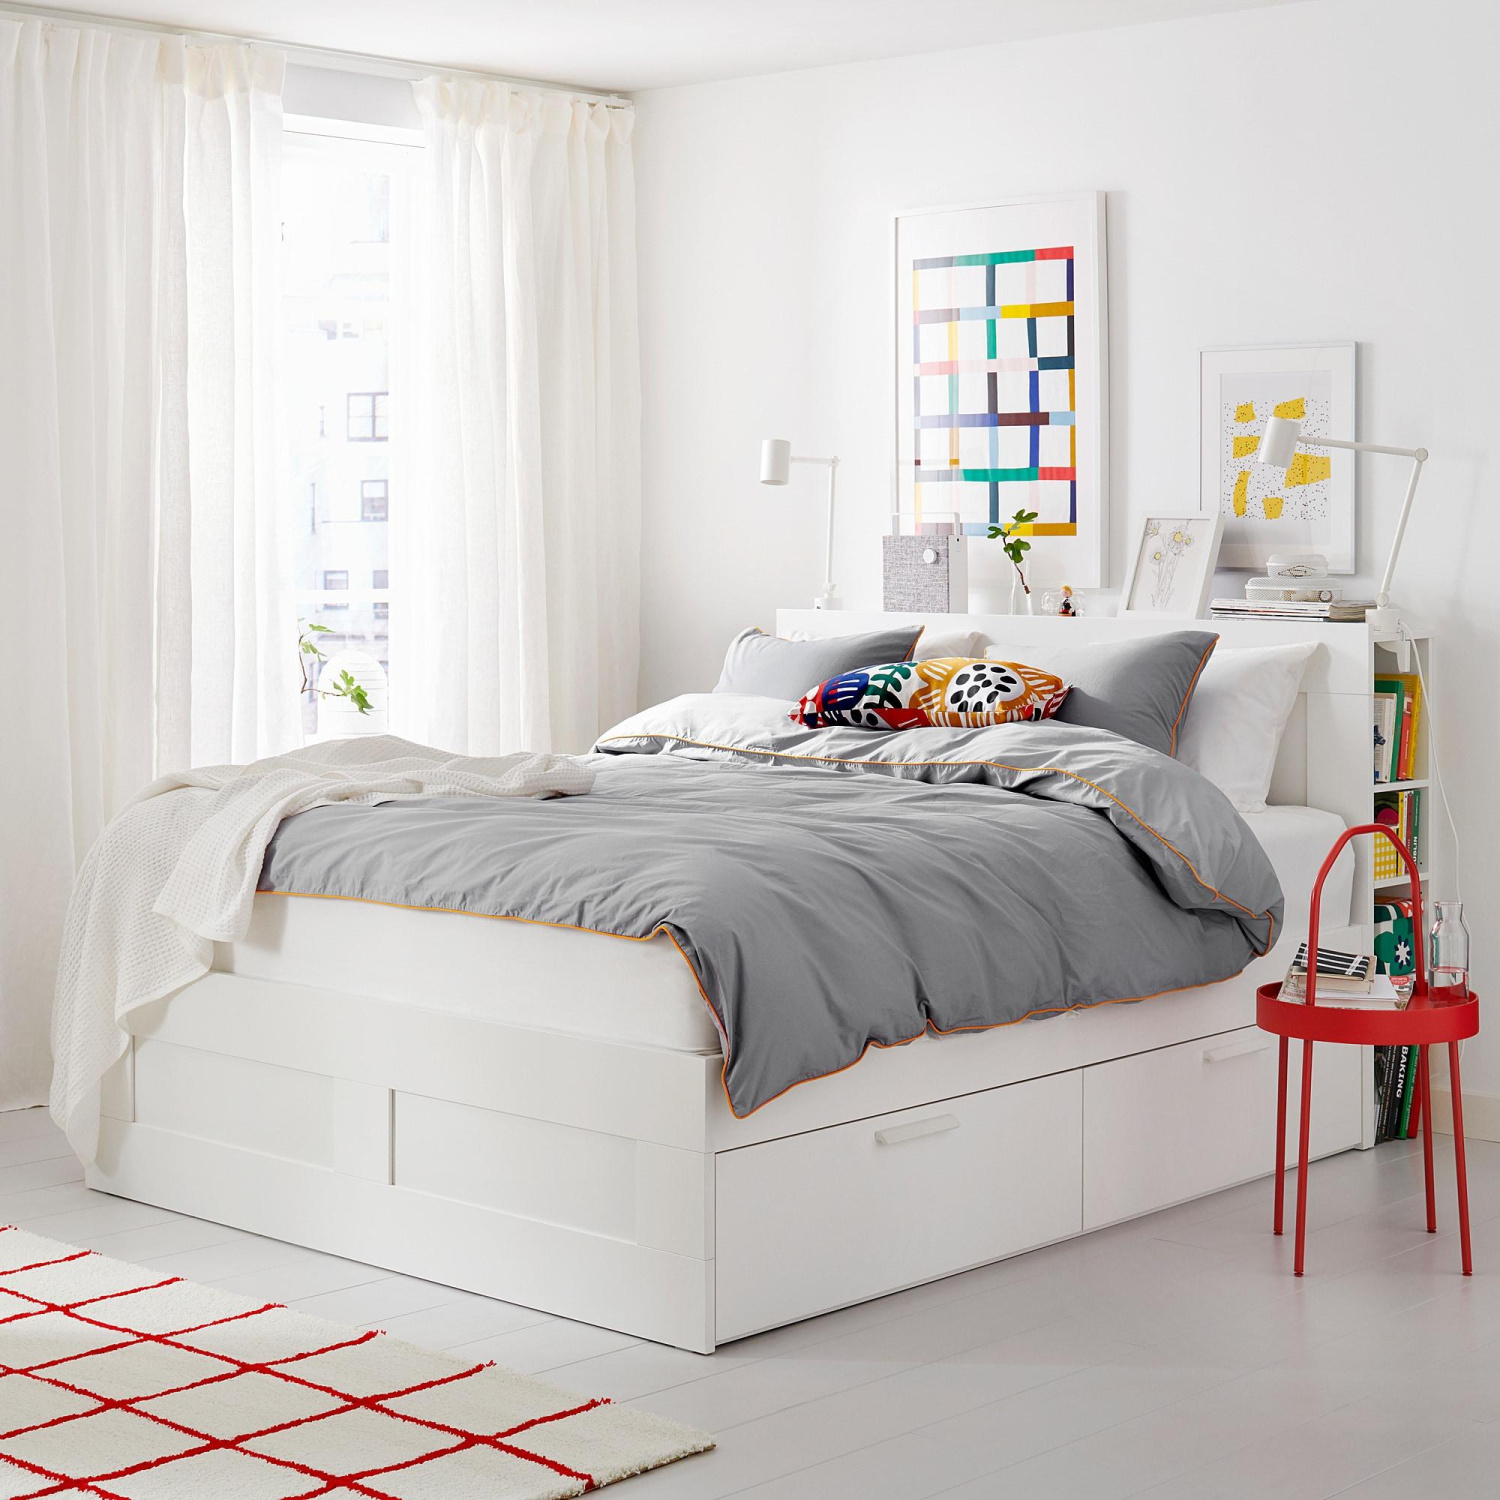 Двуспальная кровать Бримнэс ИКЕА (IKEA)